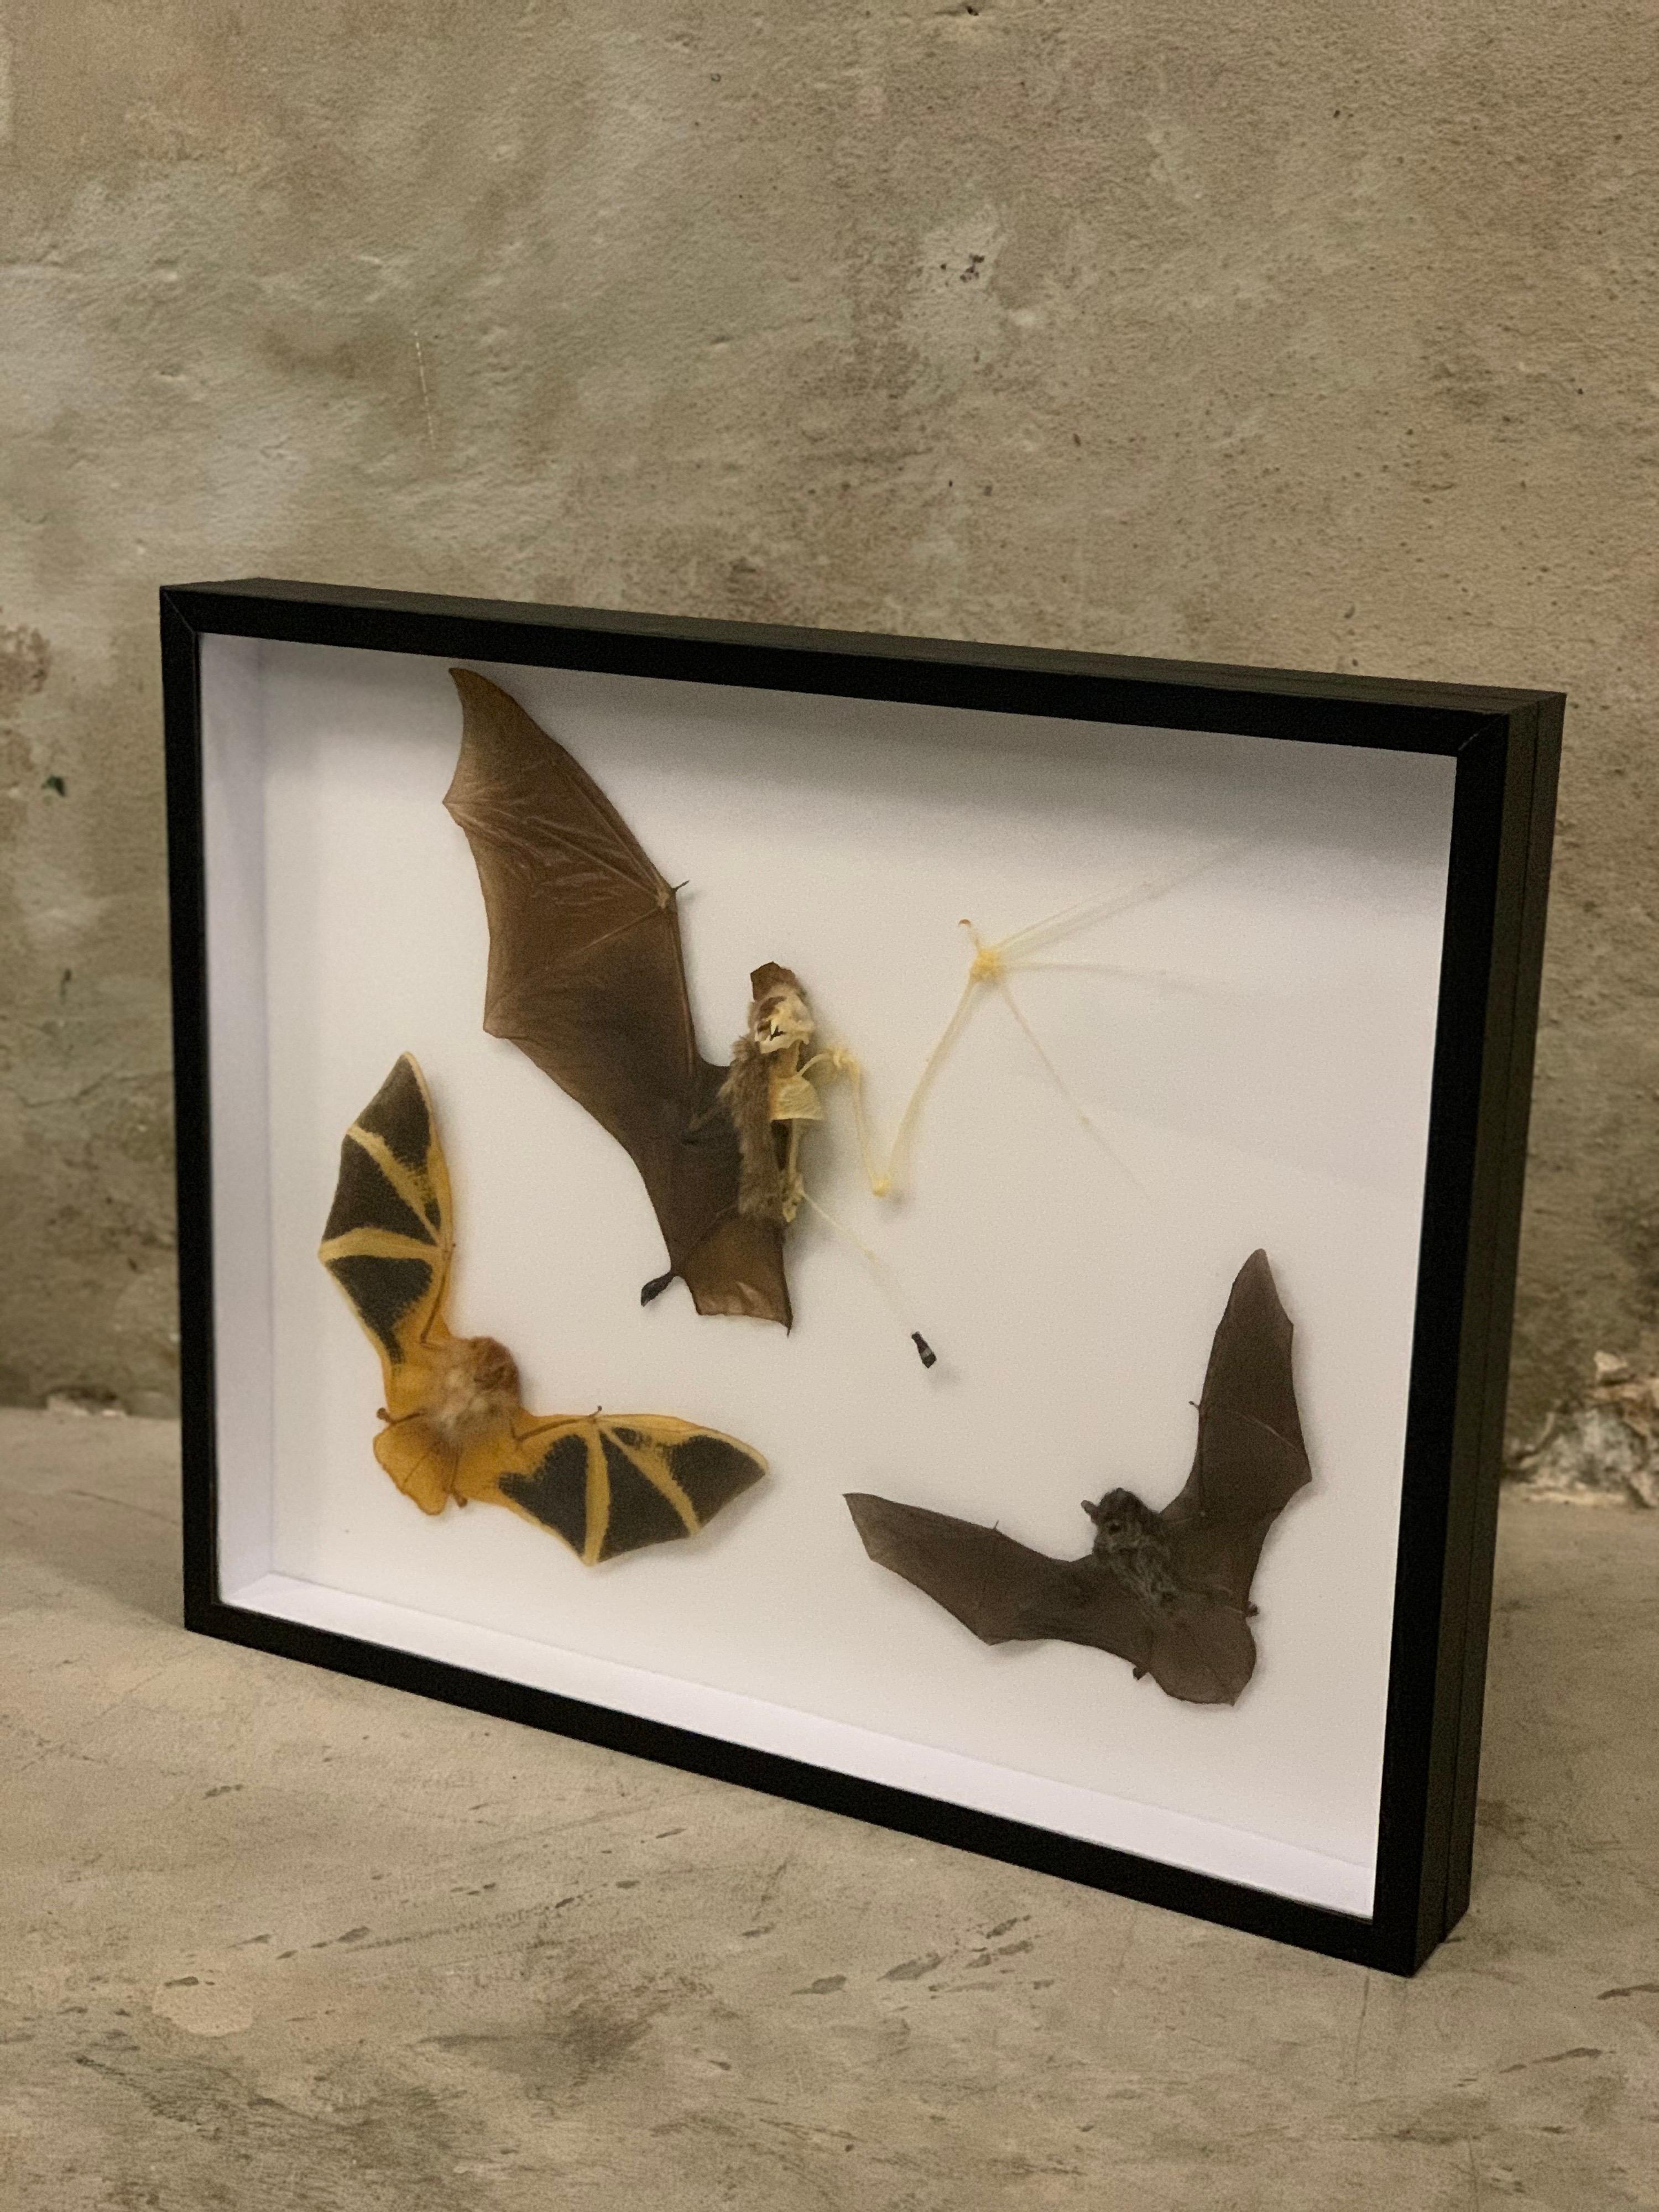 Thai Taxidermy Display Bat Species, Wood, Glass